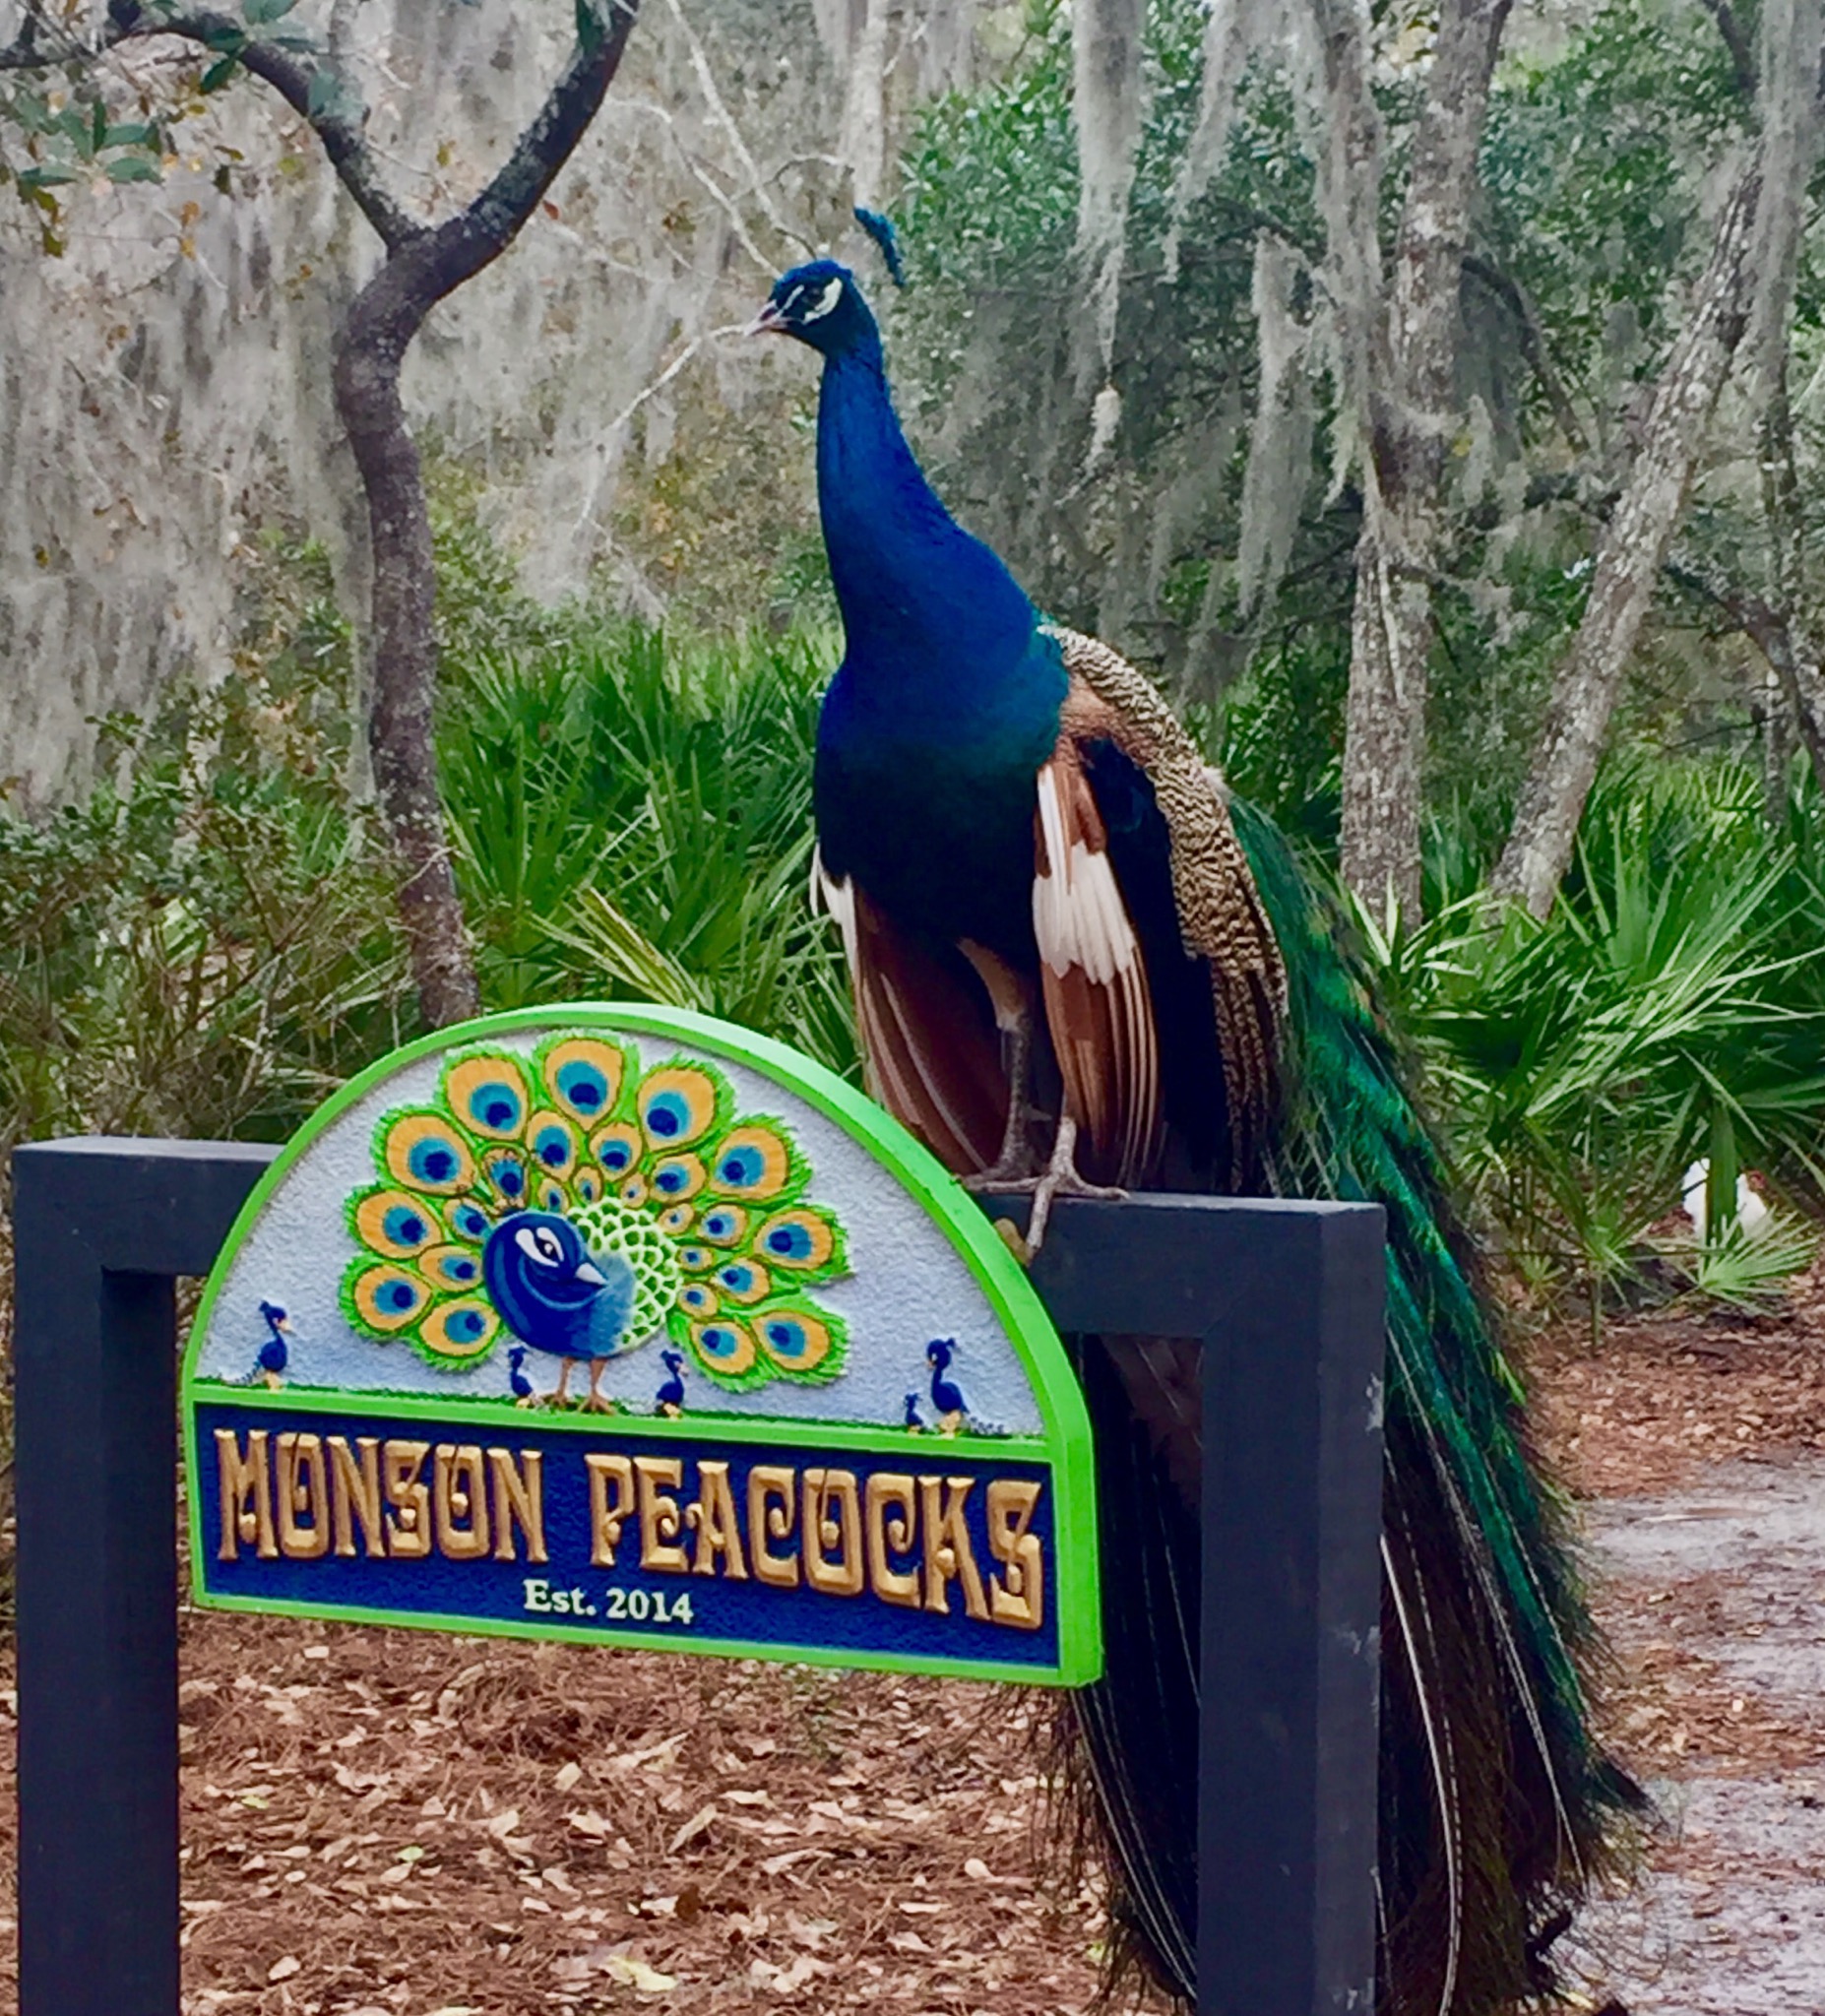 Monson's Peacocks